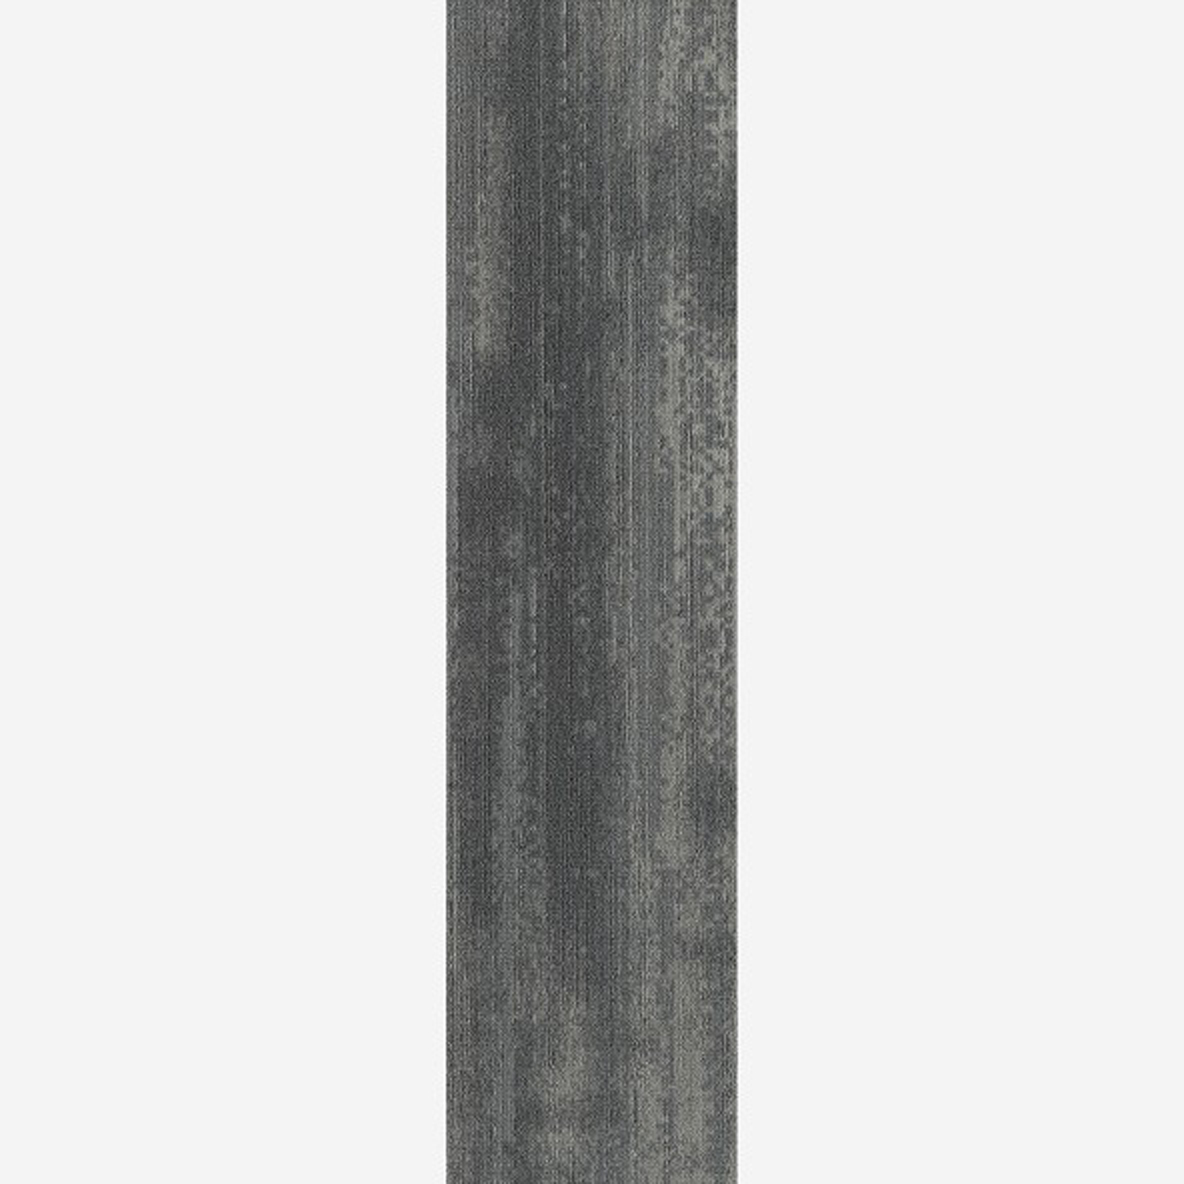 Ingrained Commercial Carpet Plank Neutral .28 Inch x 25 cm x 1 Meter Per Plank Pewter Medium Full Tile